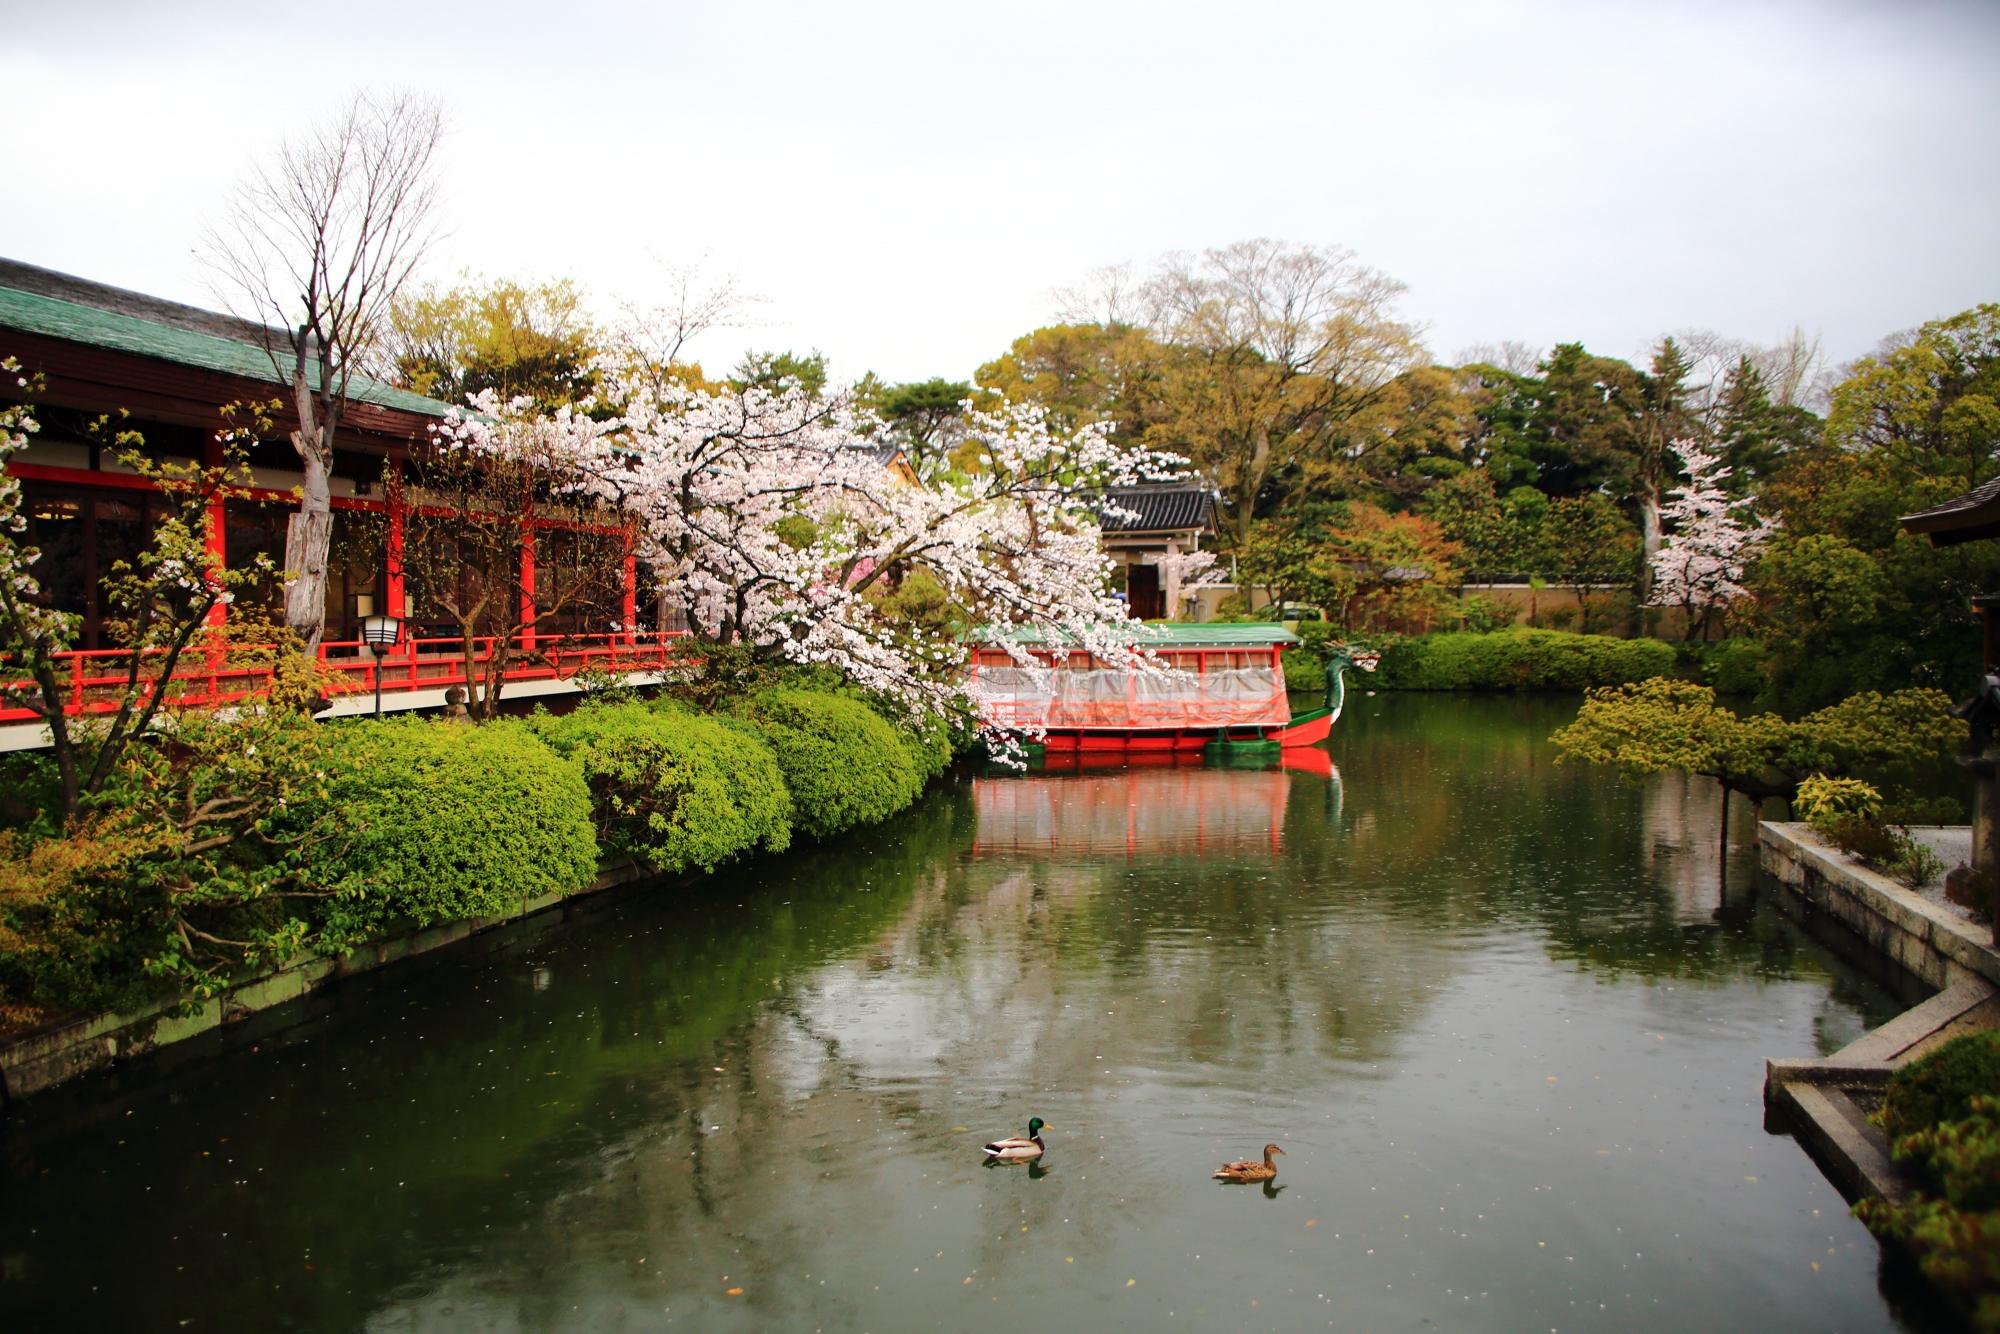 神泉苑の法成就池に浮かぶ龍王船と桜